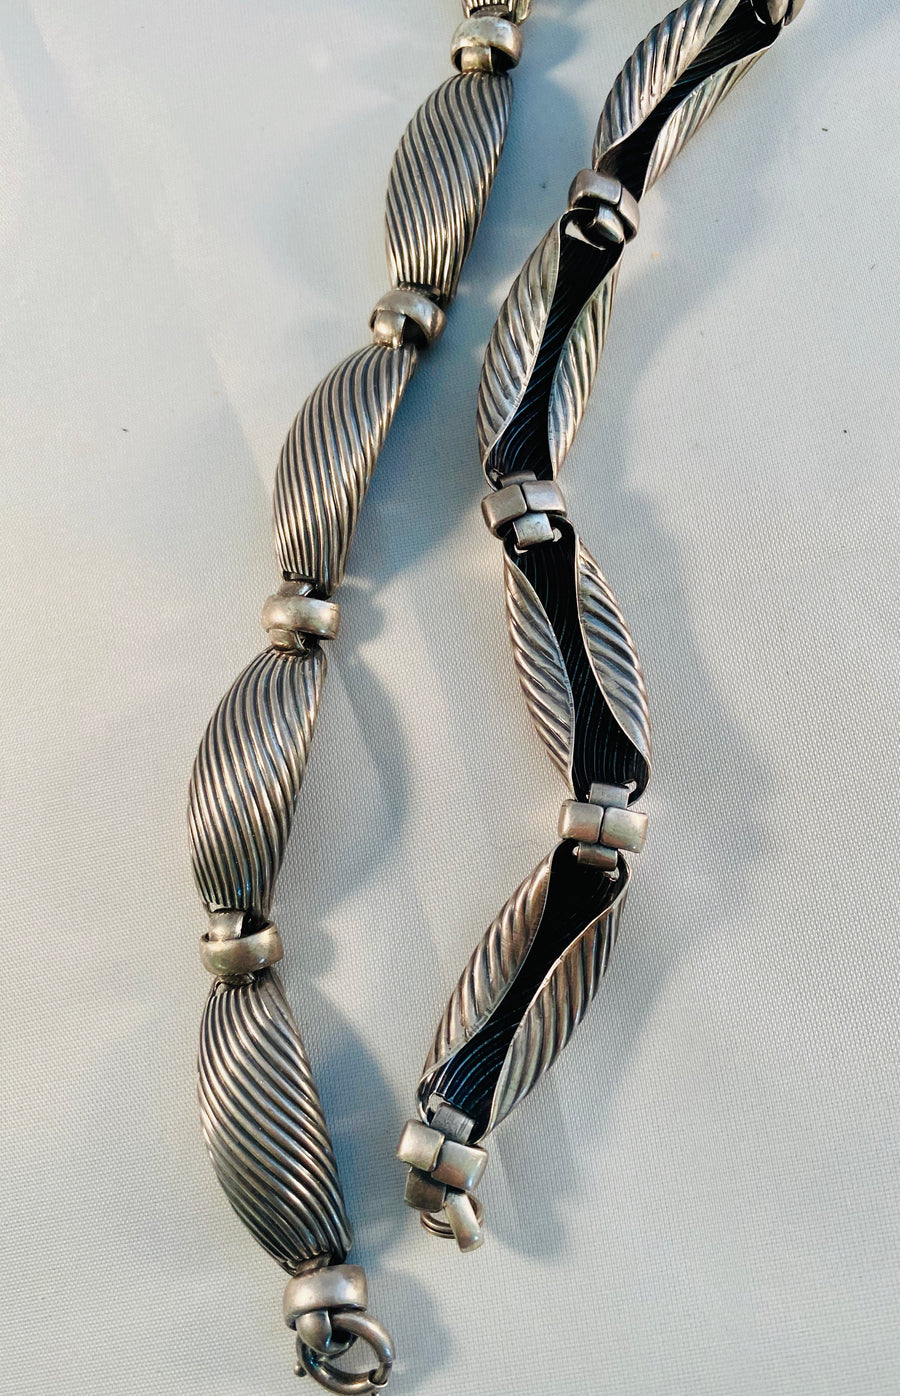 Napier necklace